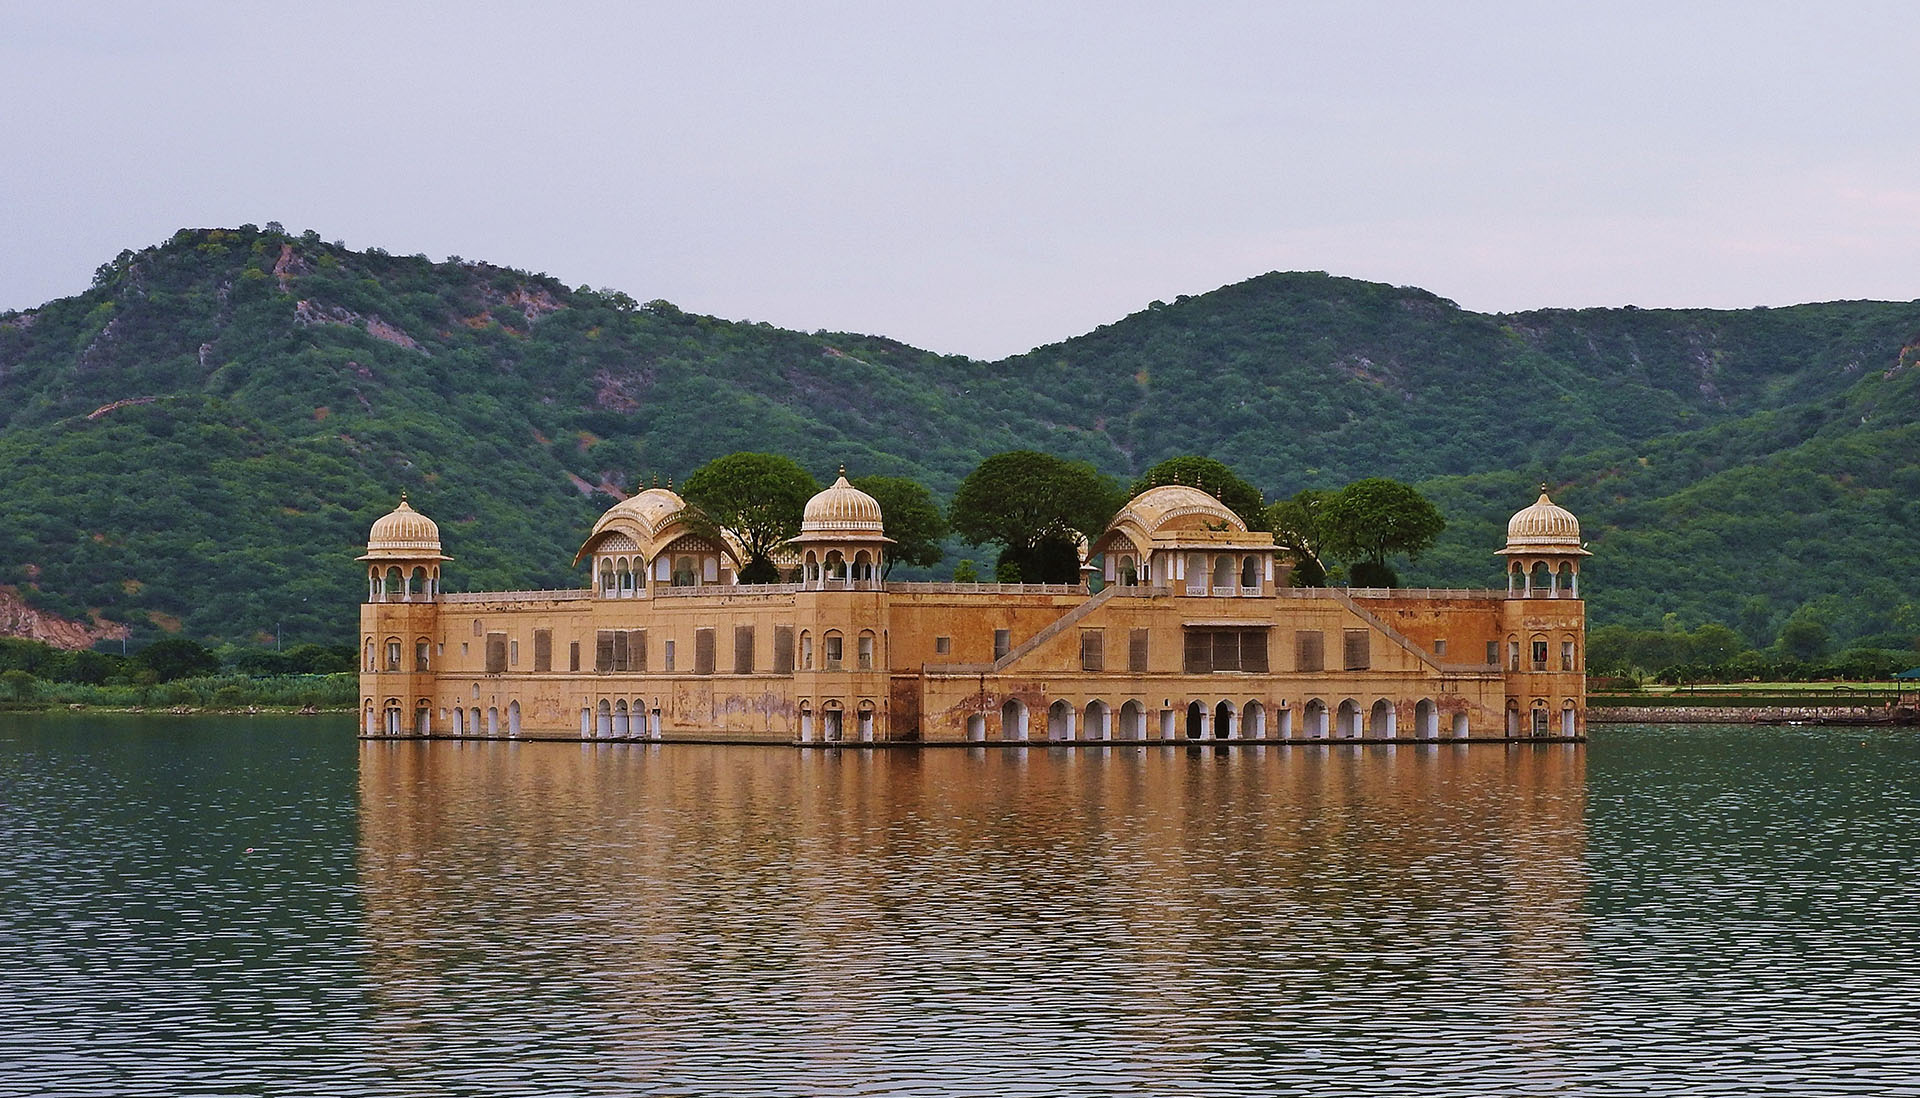 Contrairement au Taj Mahal, dit le palais de la couronne, le Jal Mahal est peu connu. Littéralement « palais sur l'eau », il est situé dans le nord de l'Inde, et plus précisément à Jaipur, une ville du Rajasthan. Ce palais a été construit au XVIIIe siècle pour le Maharaja, le roi de l'Inde, afin d'être son palais d'été. Or, dans ce pays où les températures peuvent monter jusqu'à 40 °C en saison pré-mousson, il convient de pouvoir vivre dans un endroit frais. Ainsi, un barrage a été érigé dans le seul but de créer un lac autour du palais. Quel meilleur moyen d'être rafraîchi ?Jal Mahal, à Jaipur, en Inde. © Ajit Kumar Majhi, Wikimedia commons, CC by-sa 4.0